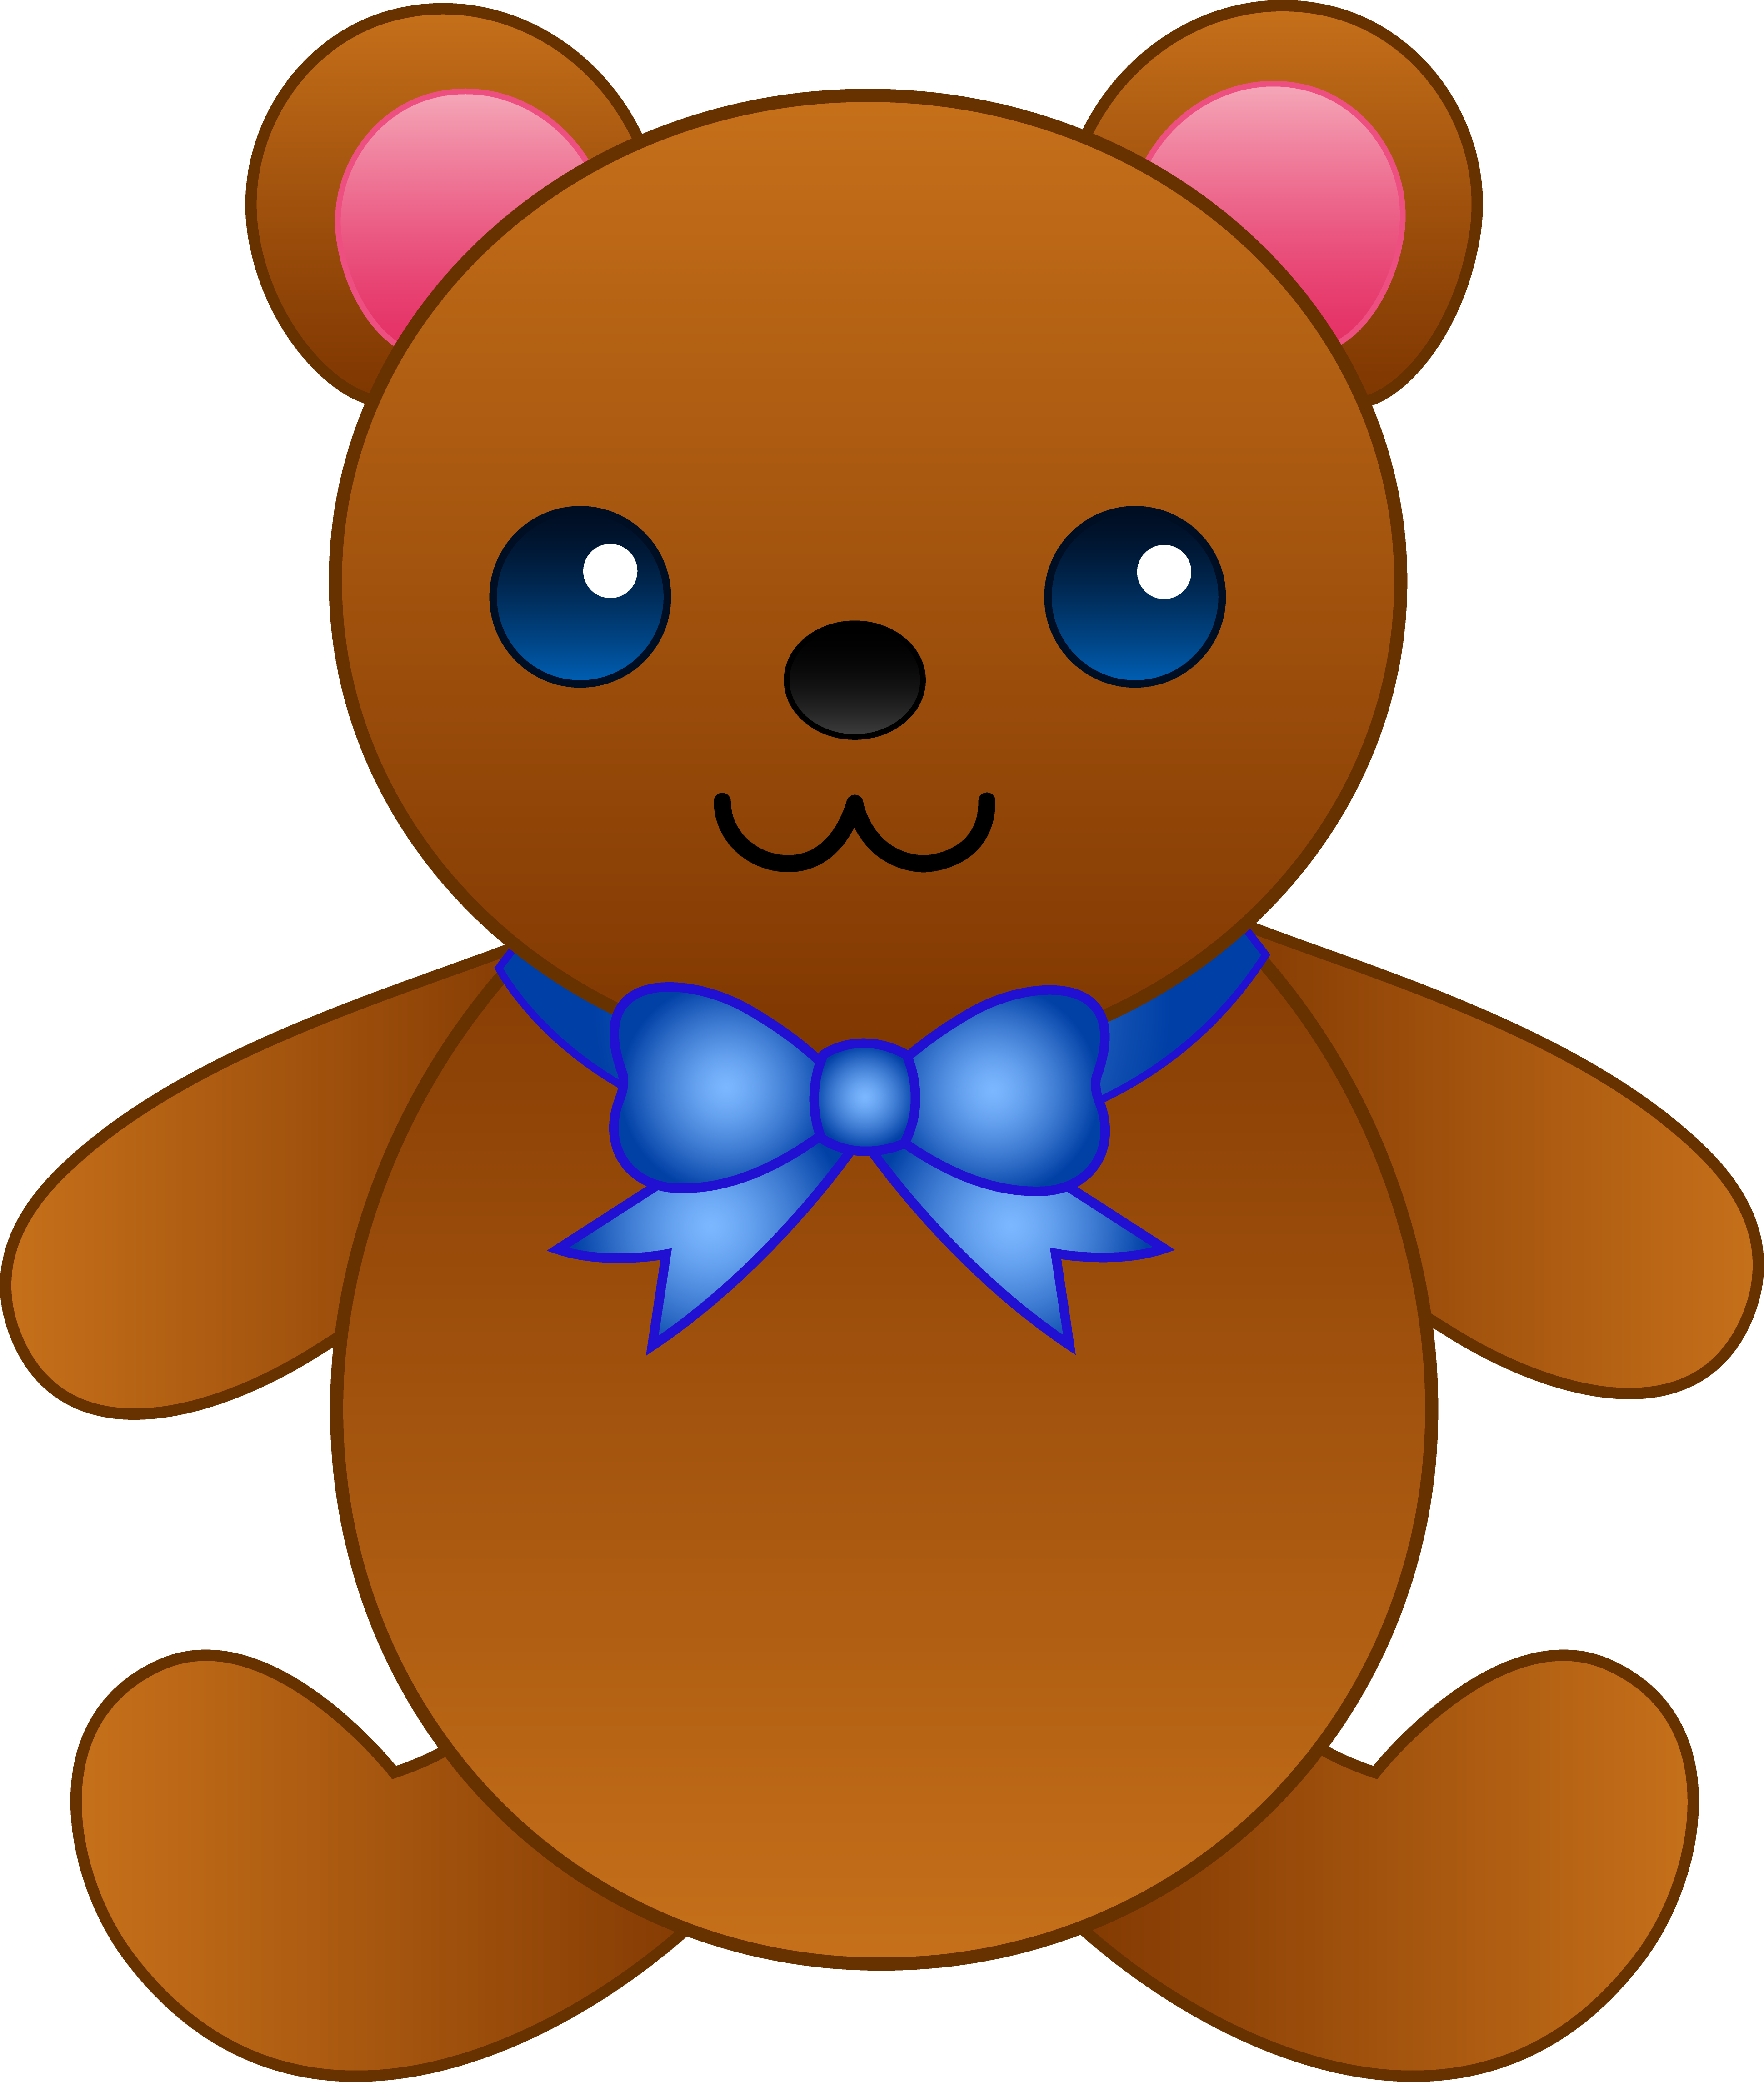 Cute Cartoon Teddy Bears - Cliparts.co